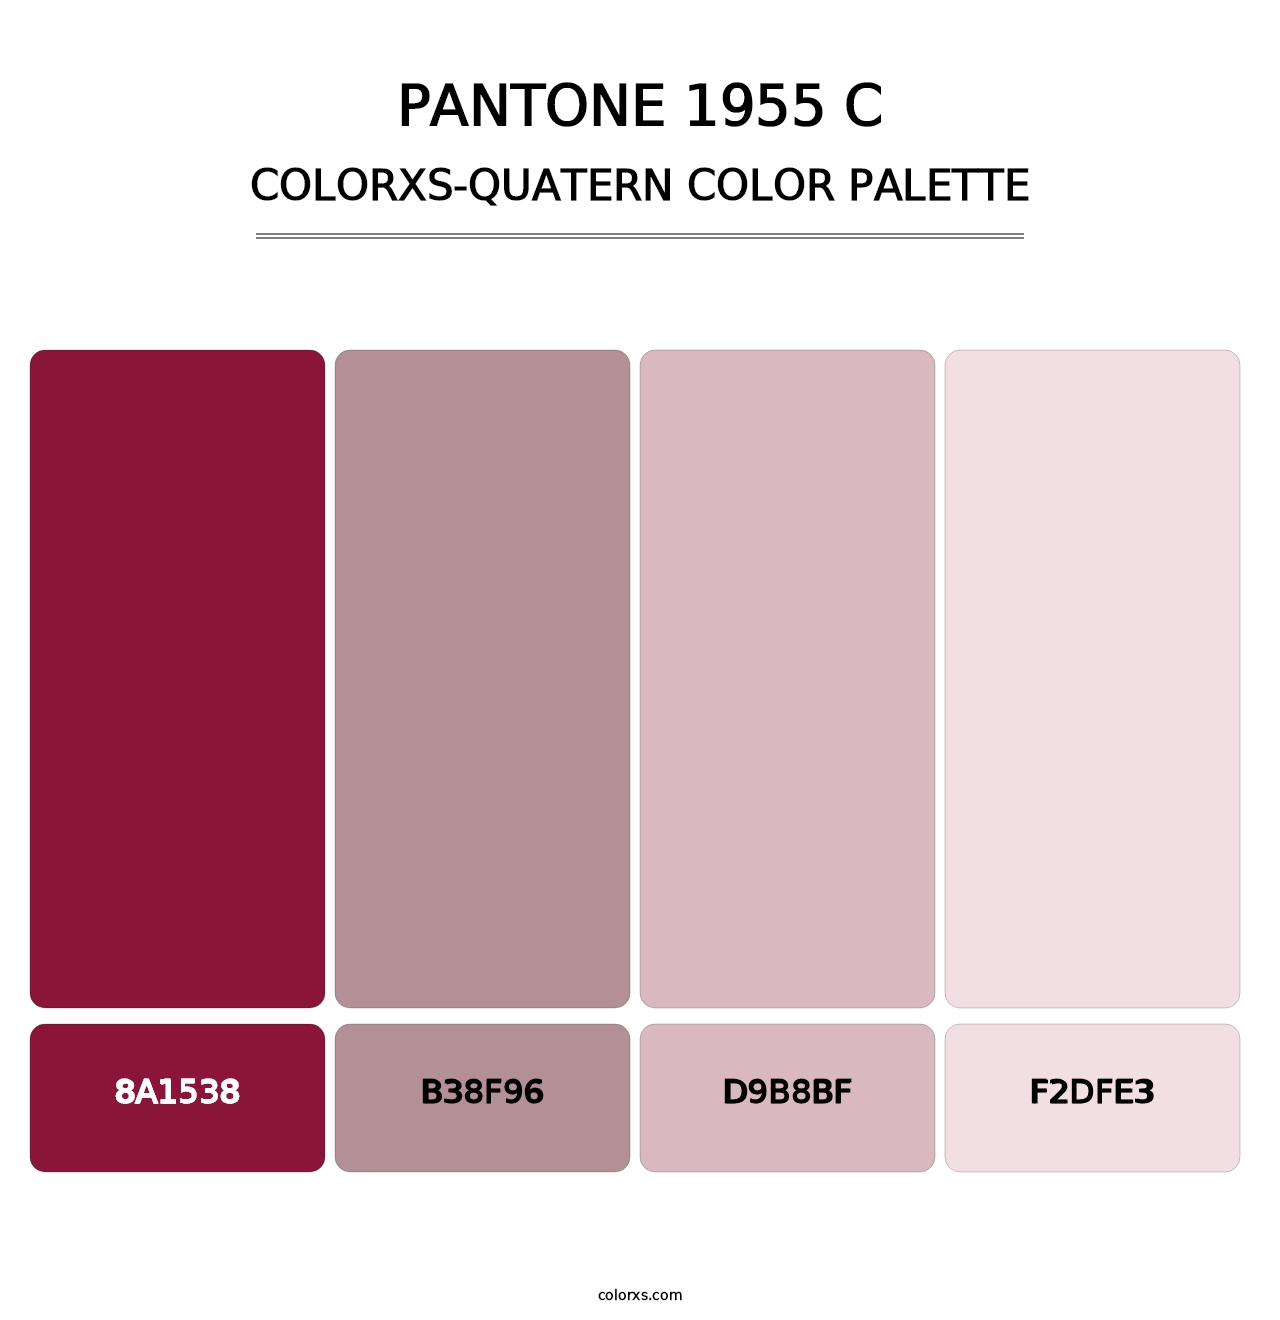 PANTONE 1955 C - Colorxs Quatern Palette